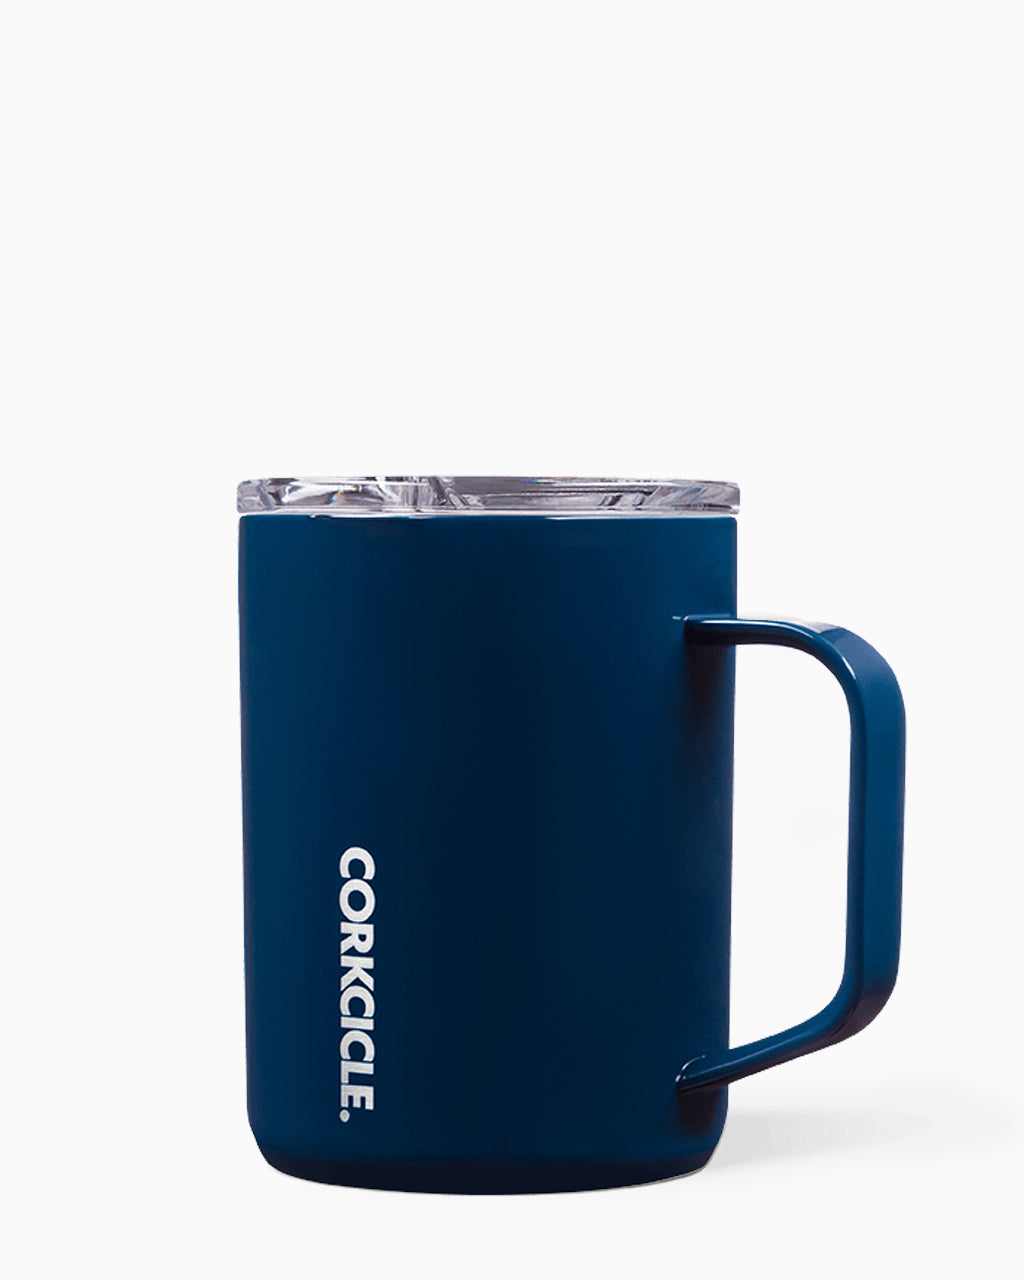 16 oz. Gloss White Corkcicle Coffee Mug